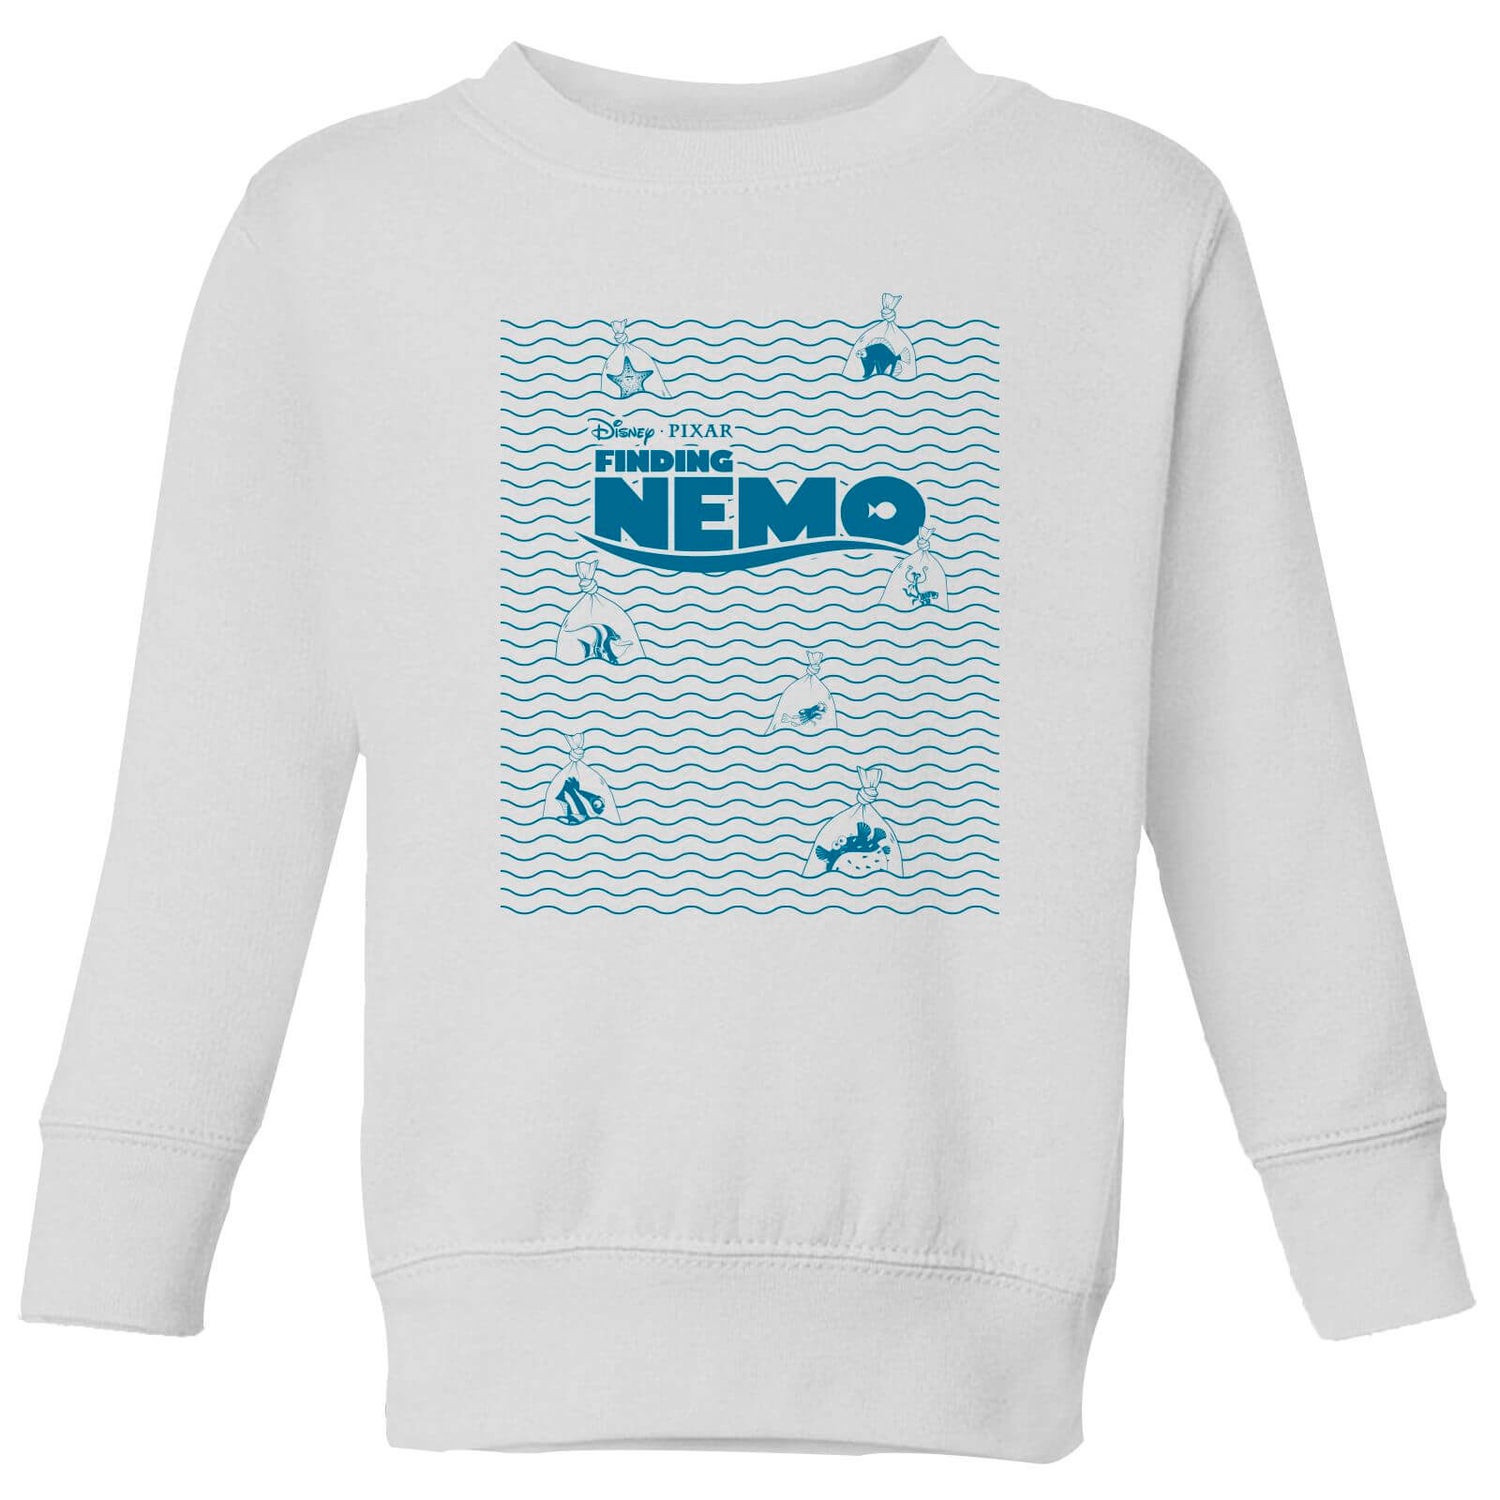 Finding Nemo Now What? Kids' Sweatshirt - White